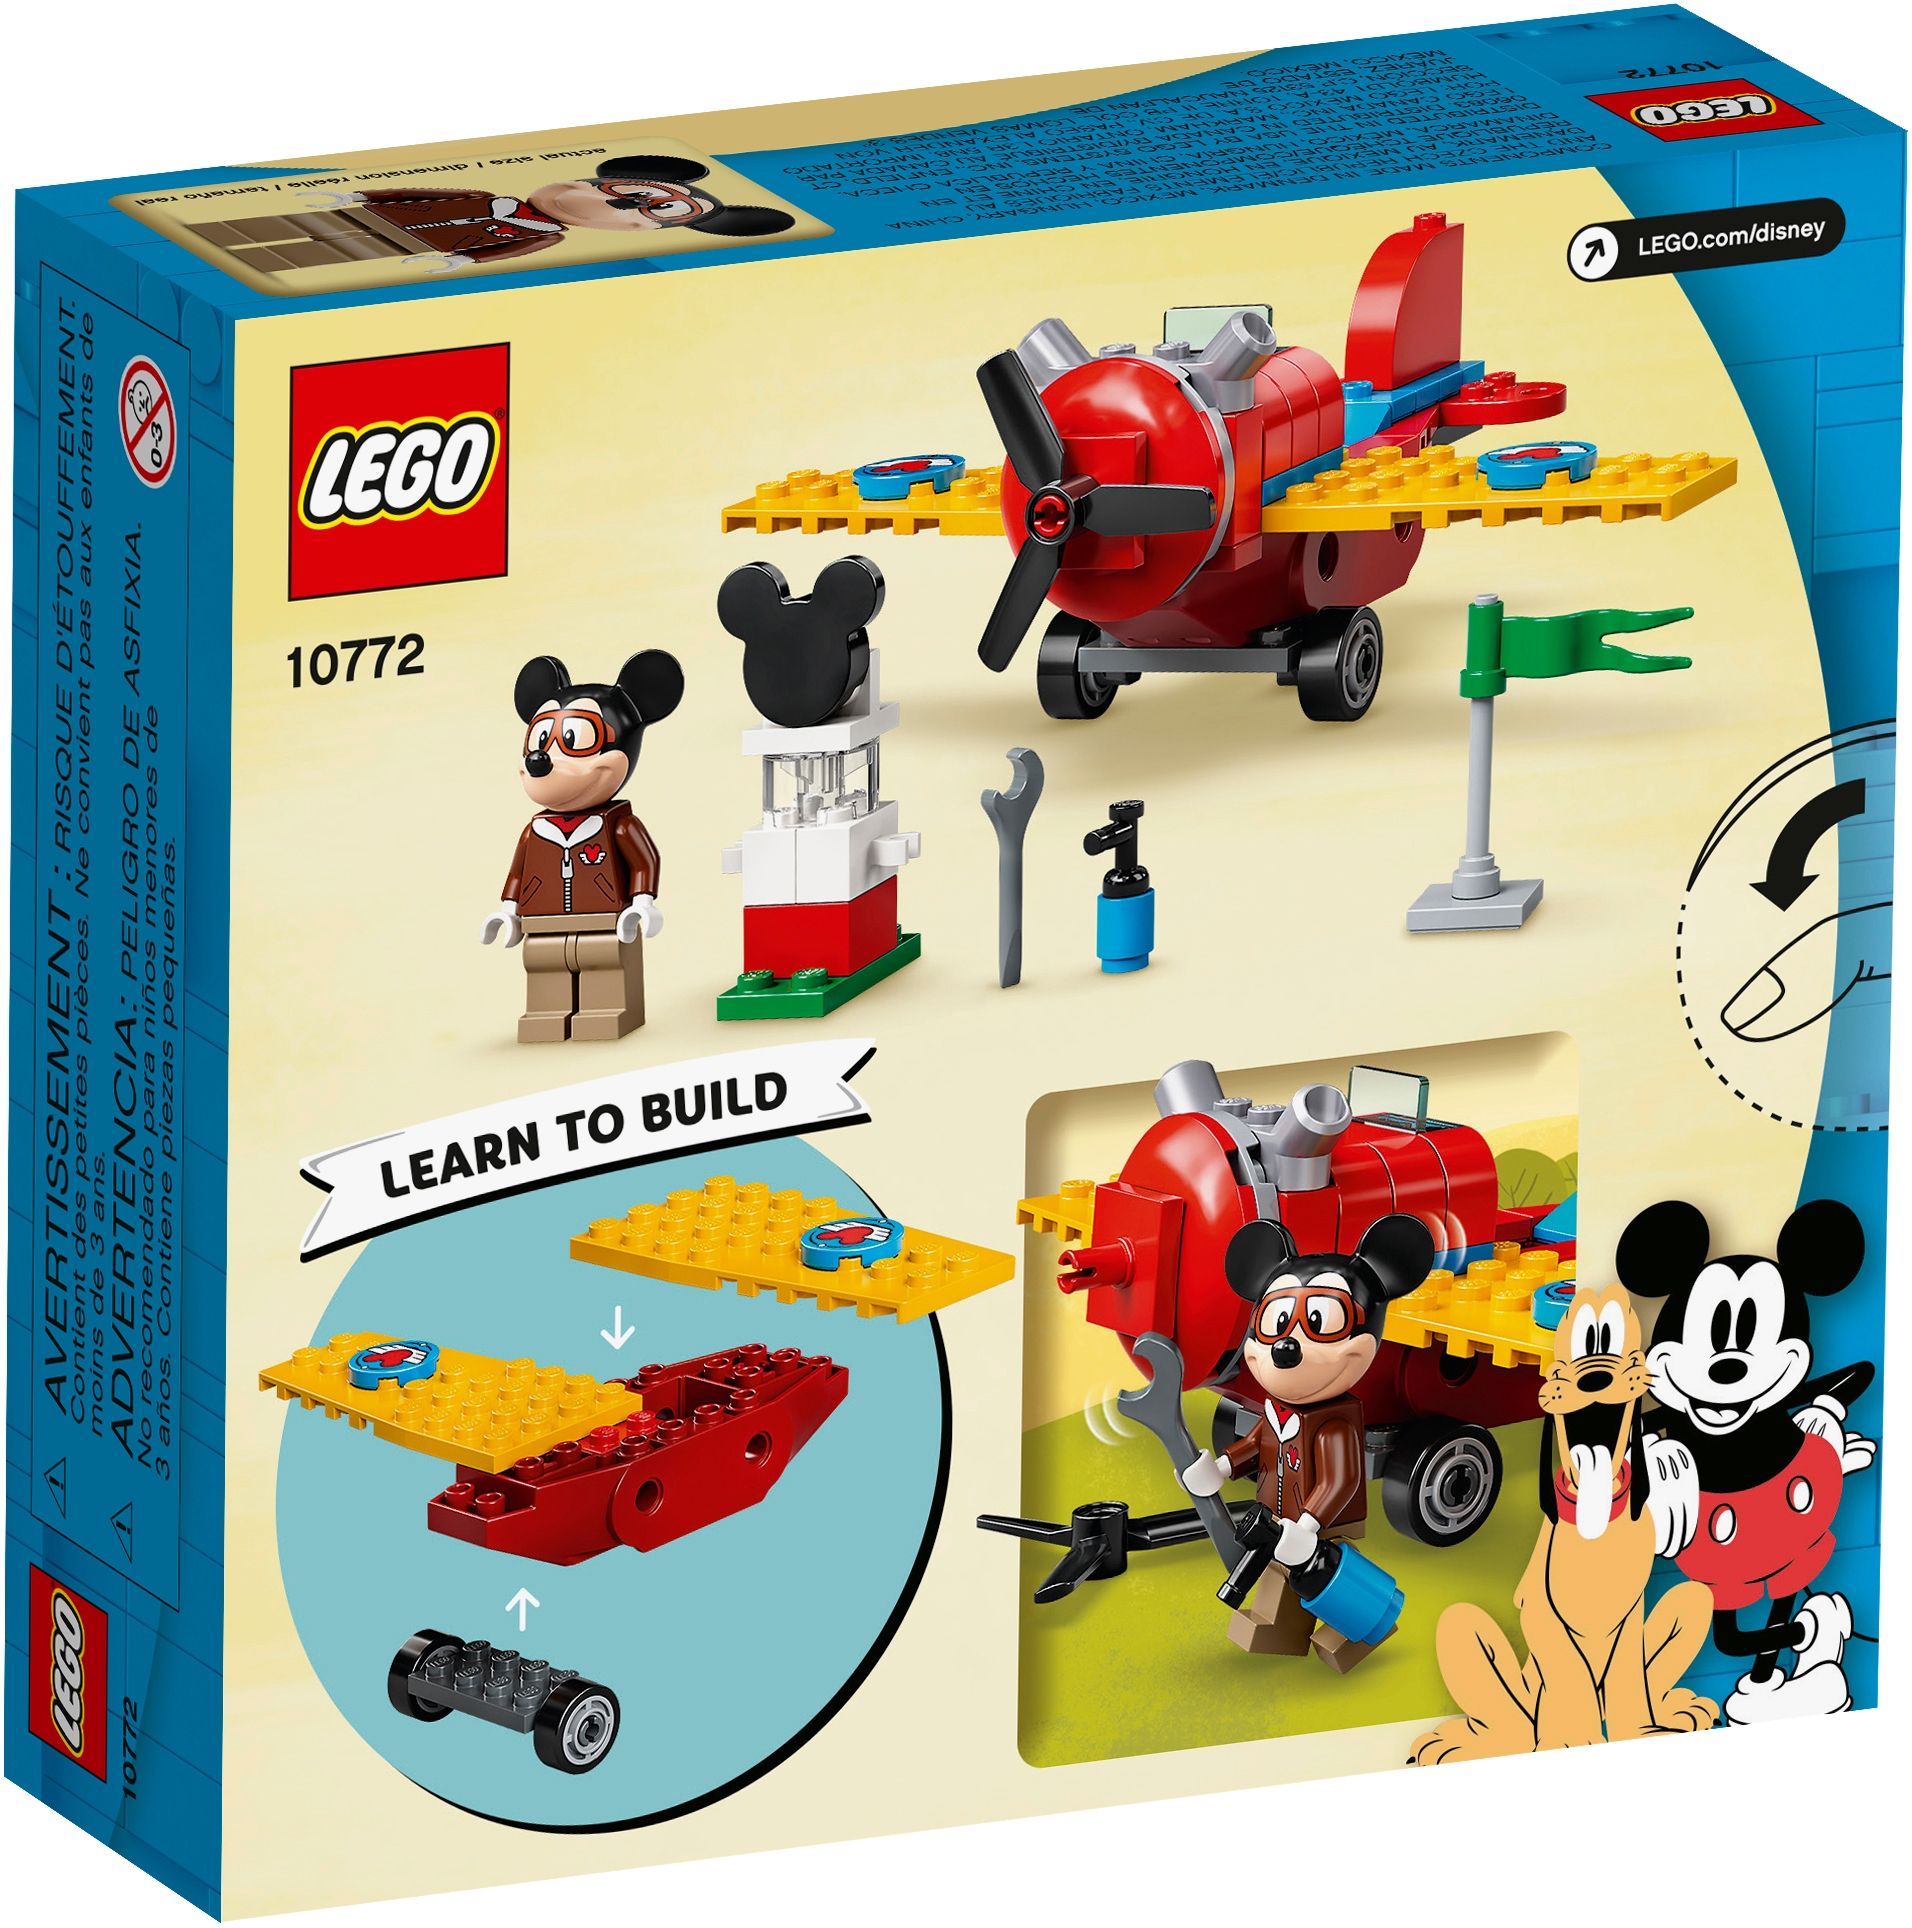 LEGO Disney 10772 Mickys Propellerflugzeug LEGO_10772_box5_v39.jpg